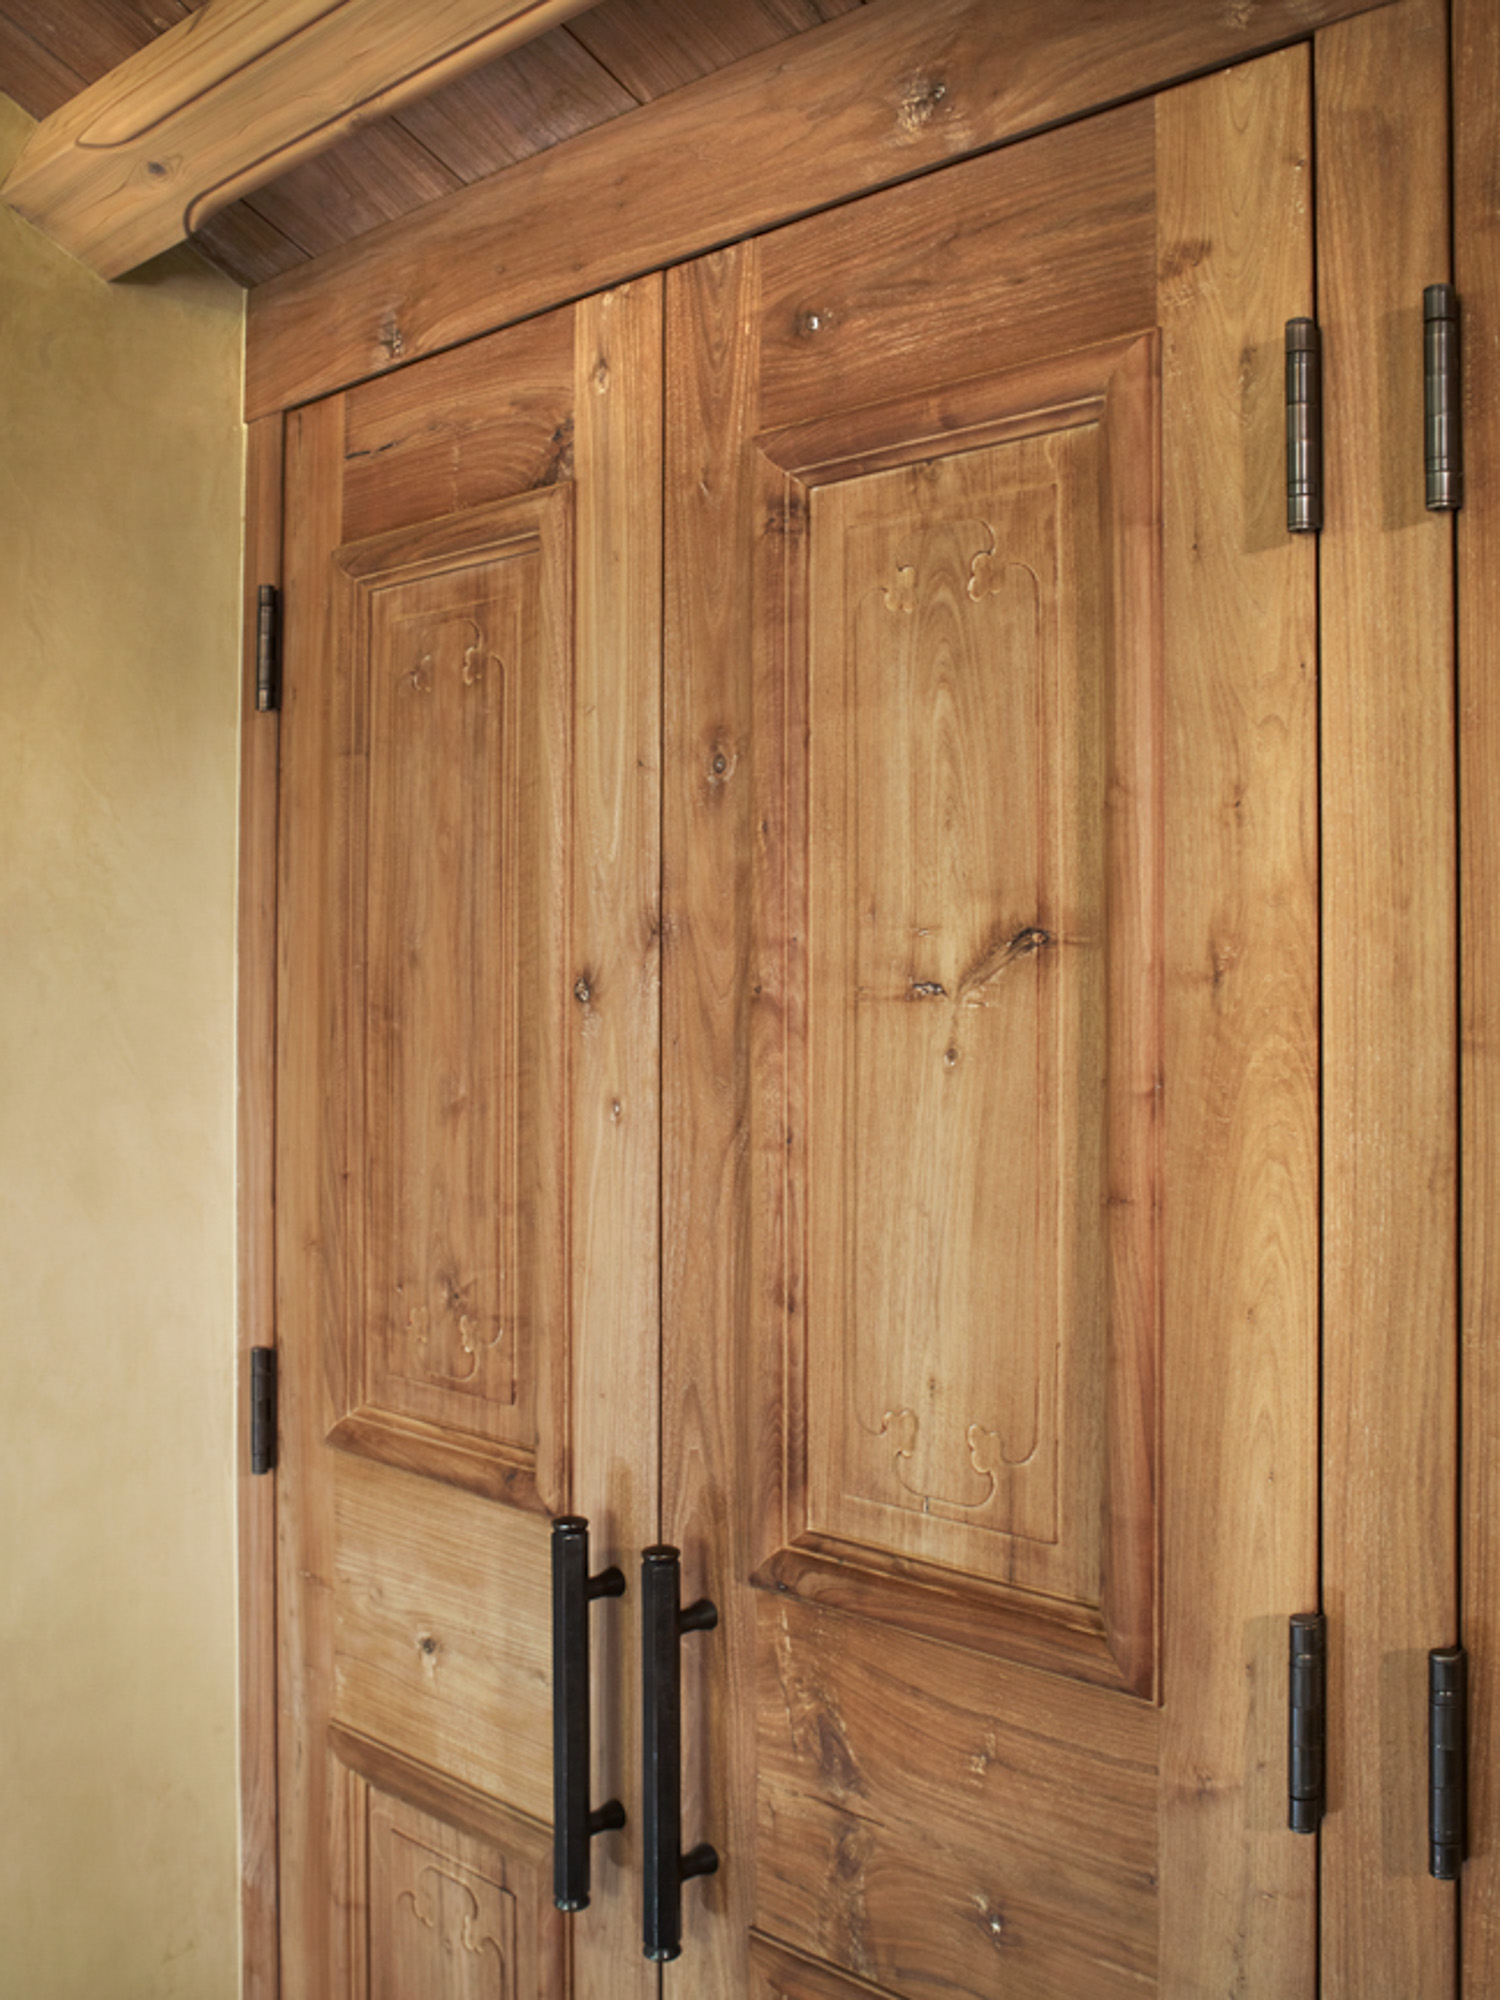 a close up of a wooden interior door at hornsilver